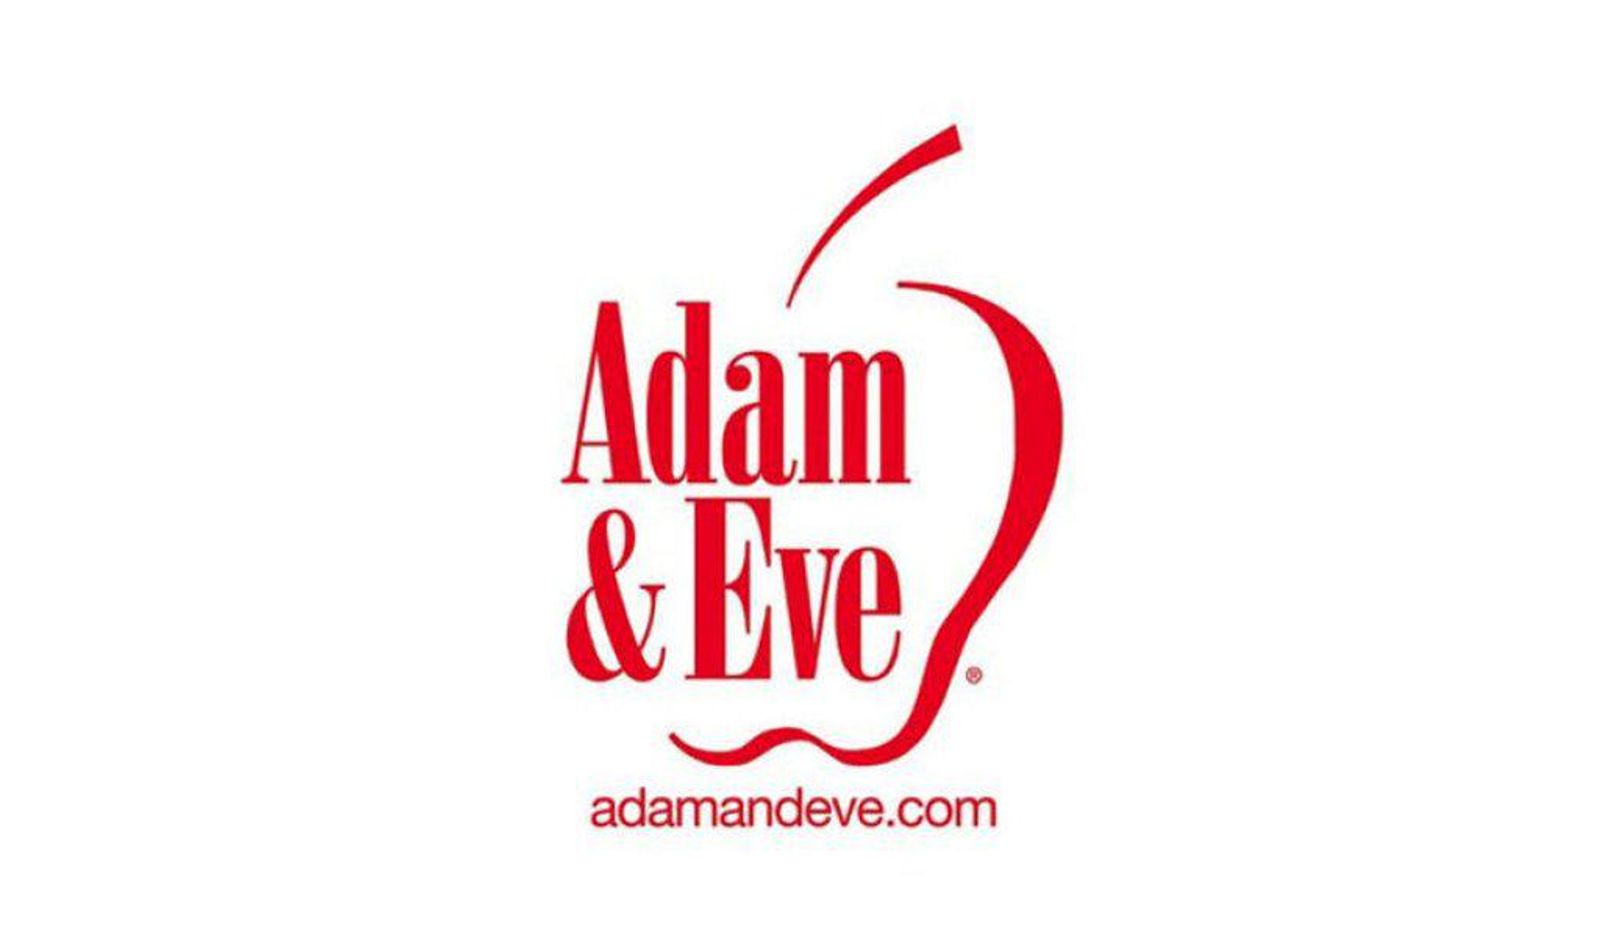 AdamEve.com Asks: 'Should Schools Allow Gay & Lesbian Teachers'?